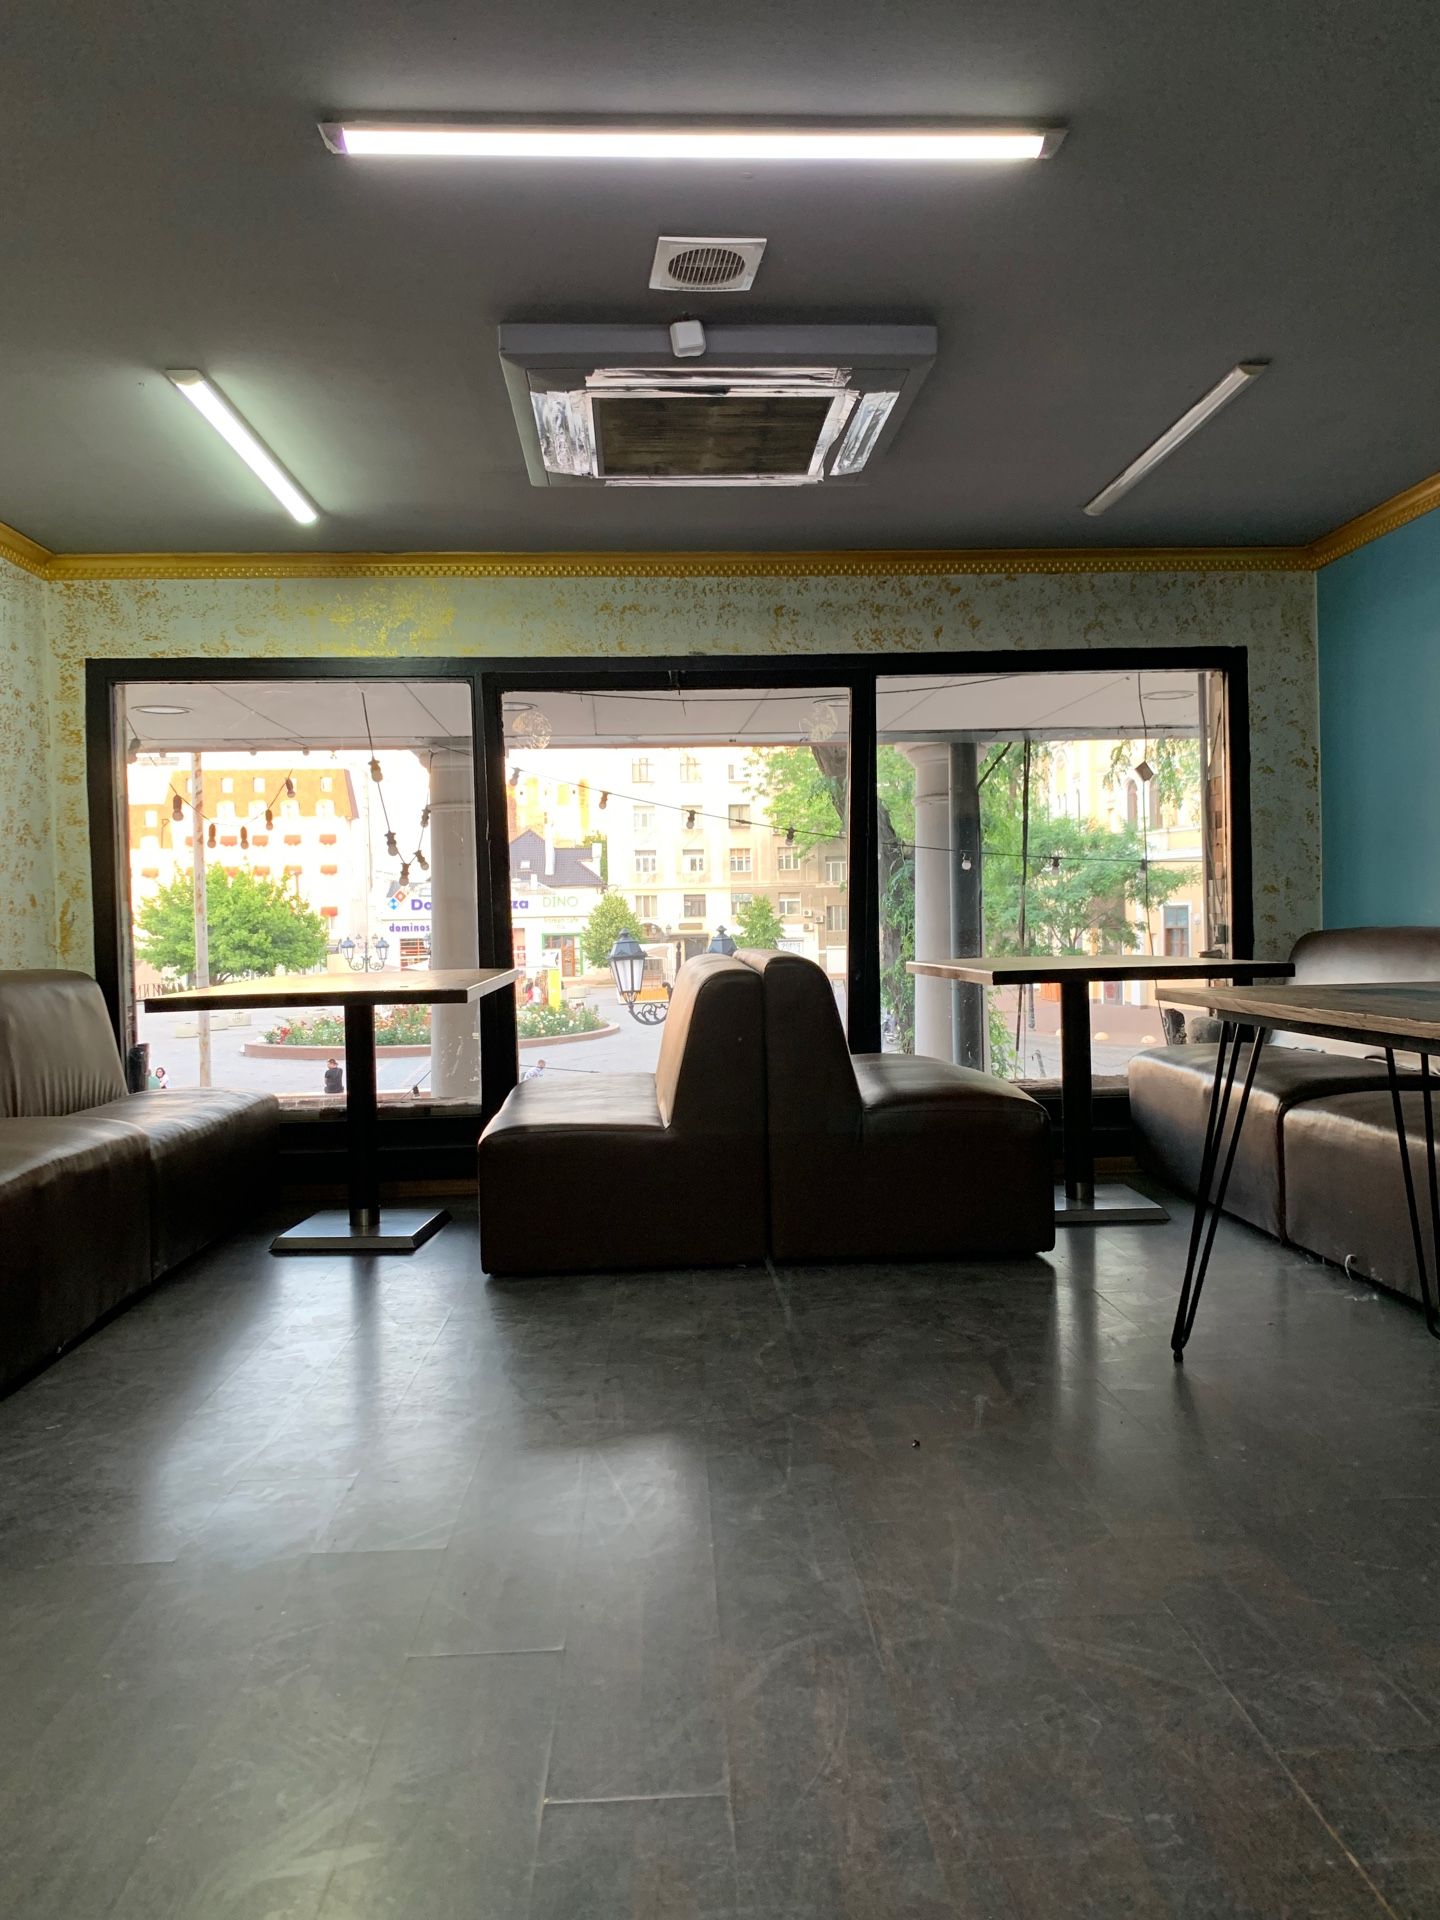 Аренда помещения на Греческой площади под кафе с летней площадкой